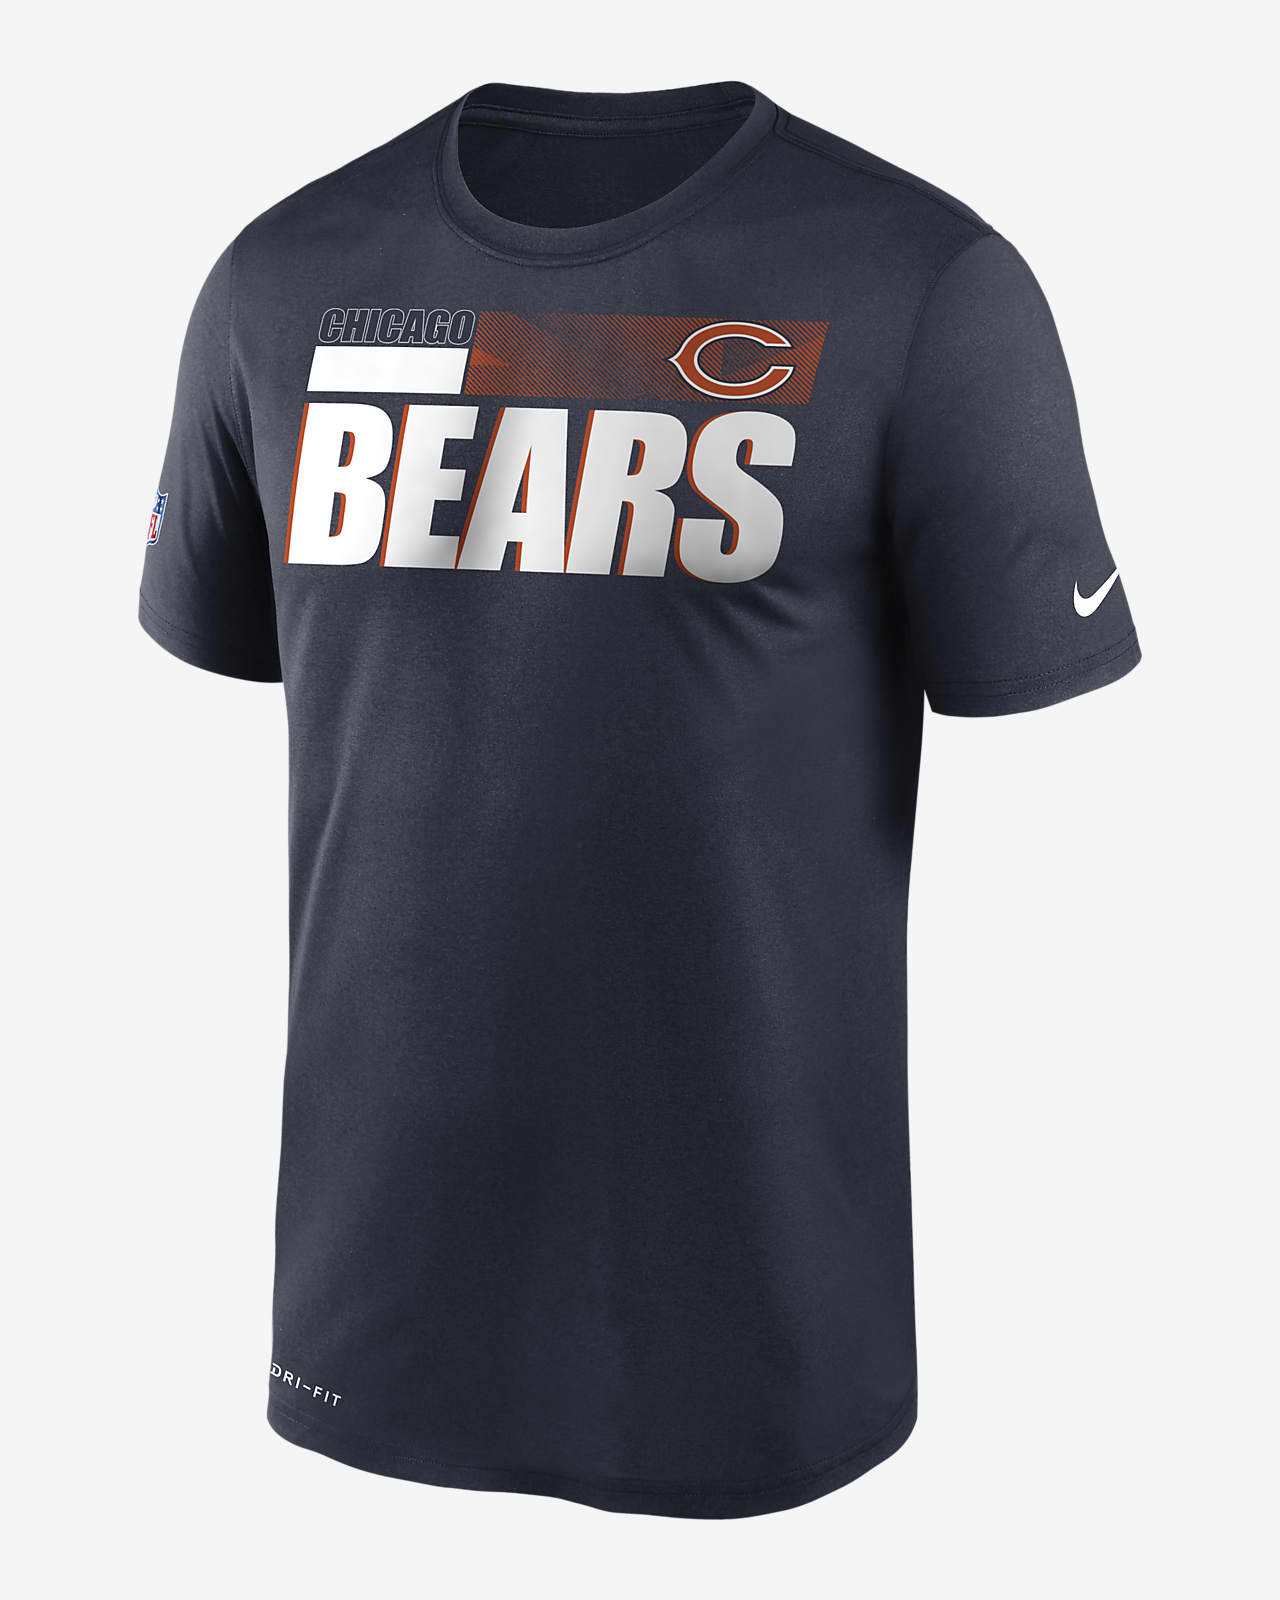 bears jerseys for sale